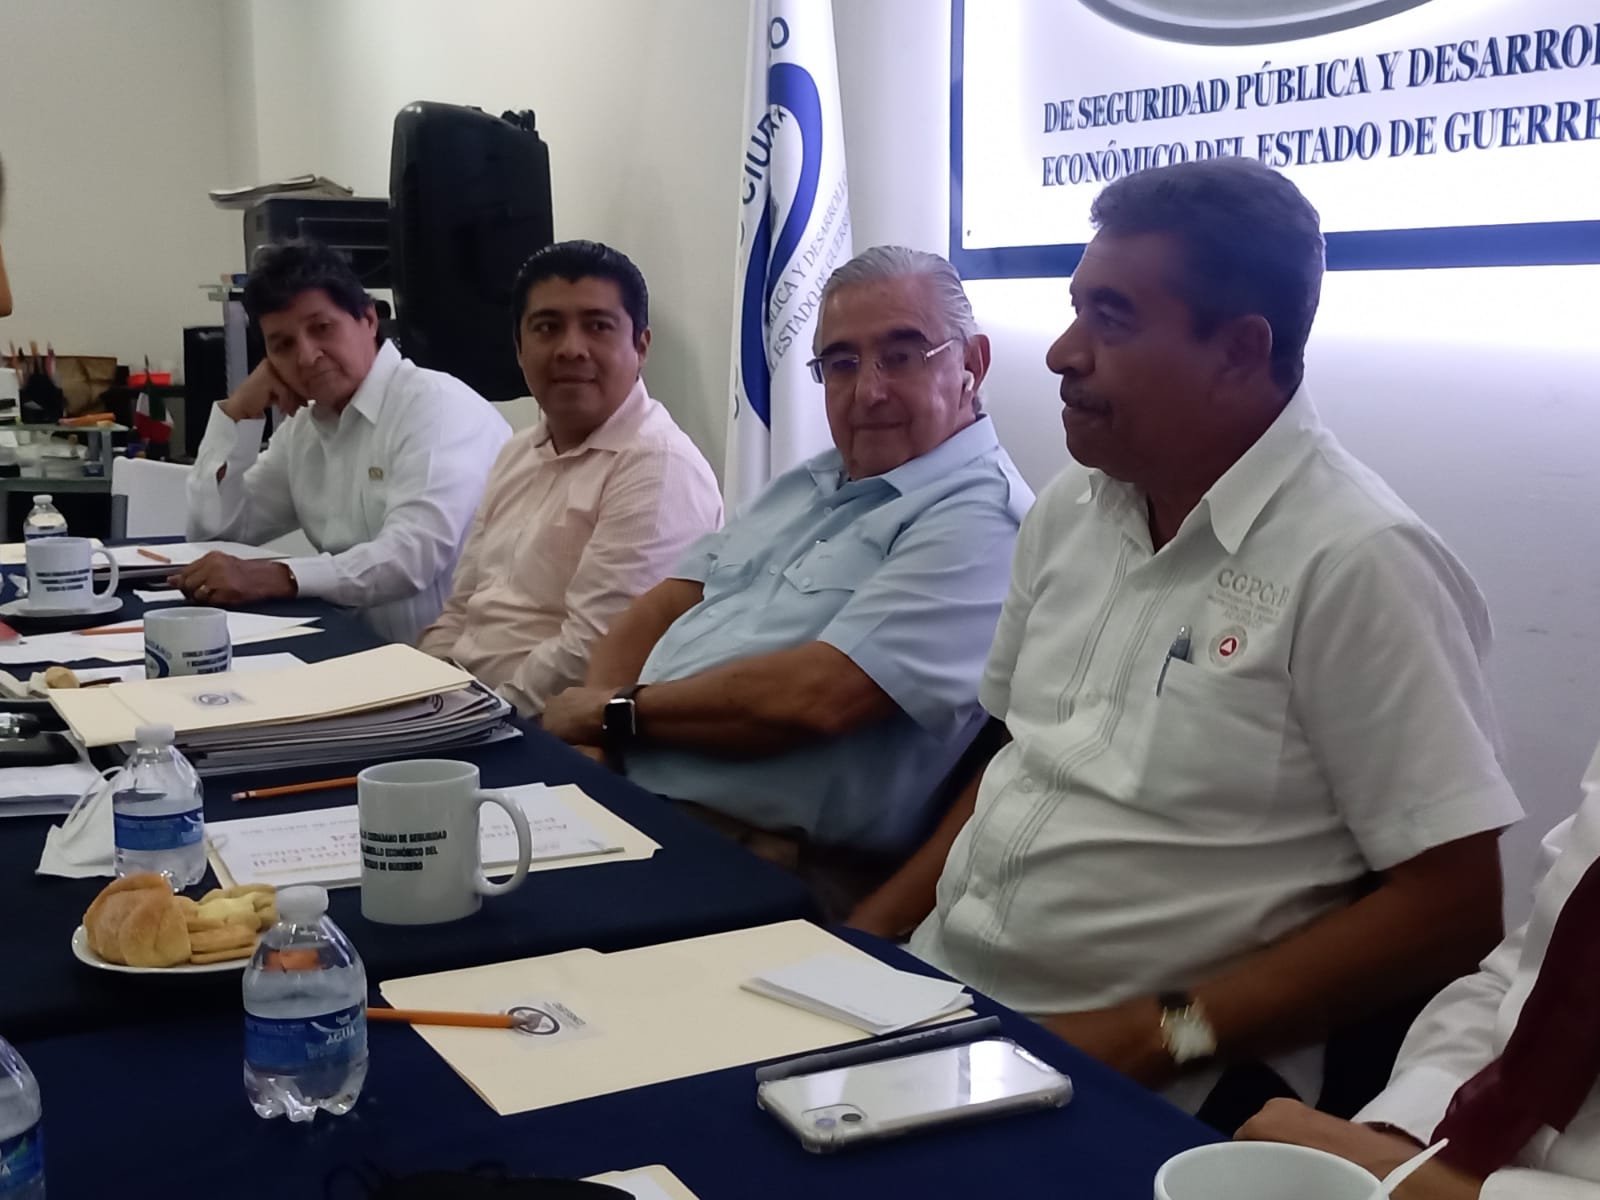 Participa PC en el Consejo de Seguridad Pública y Desarrollo Económico del Estado de Guerrero